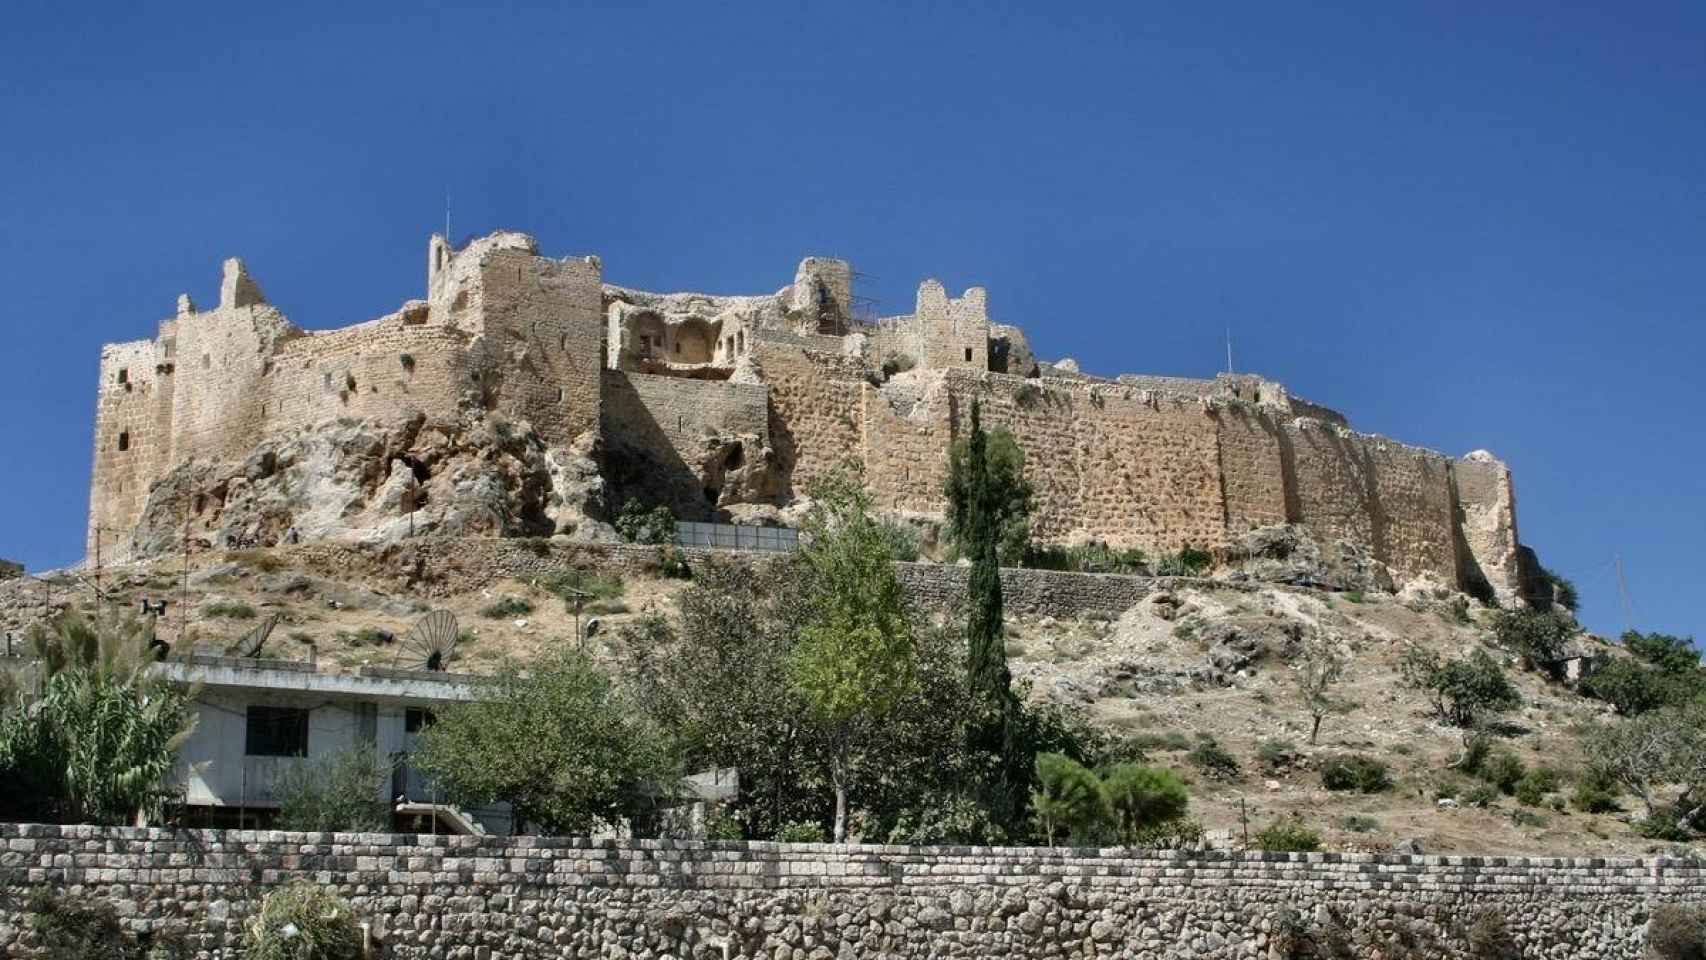 El castillo de Masyaf, donde se escondían los nazaríes.